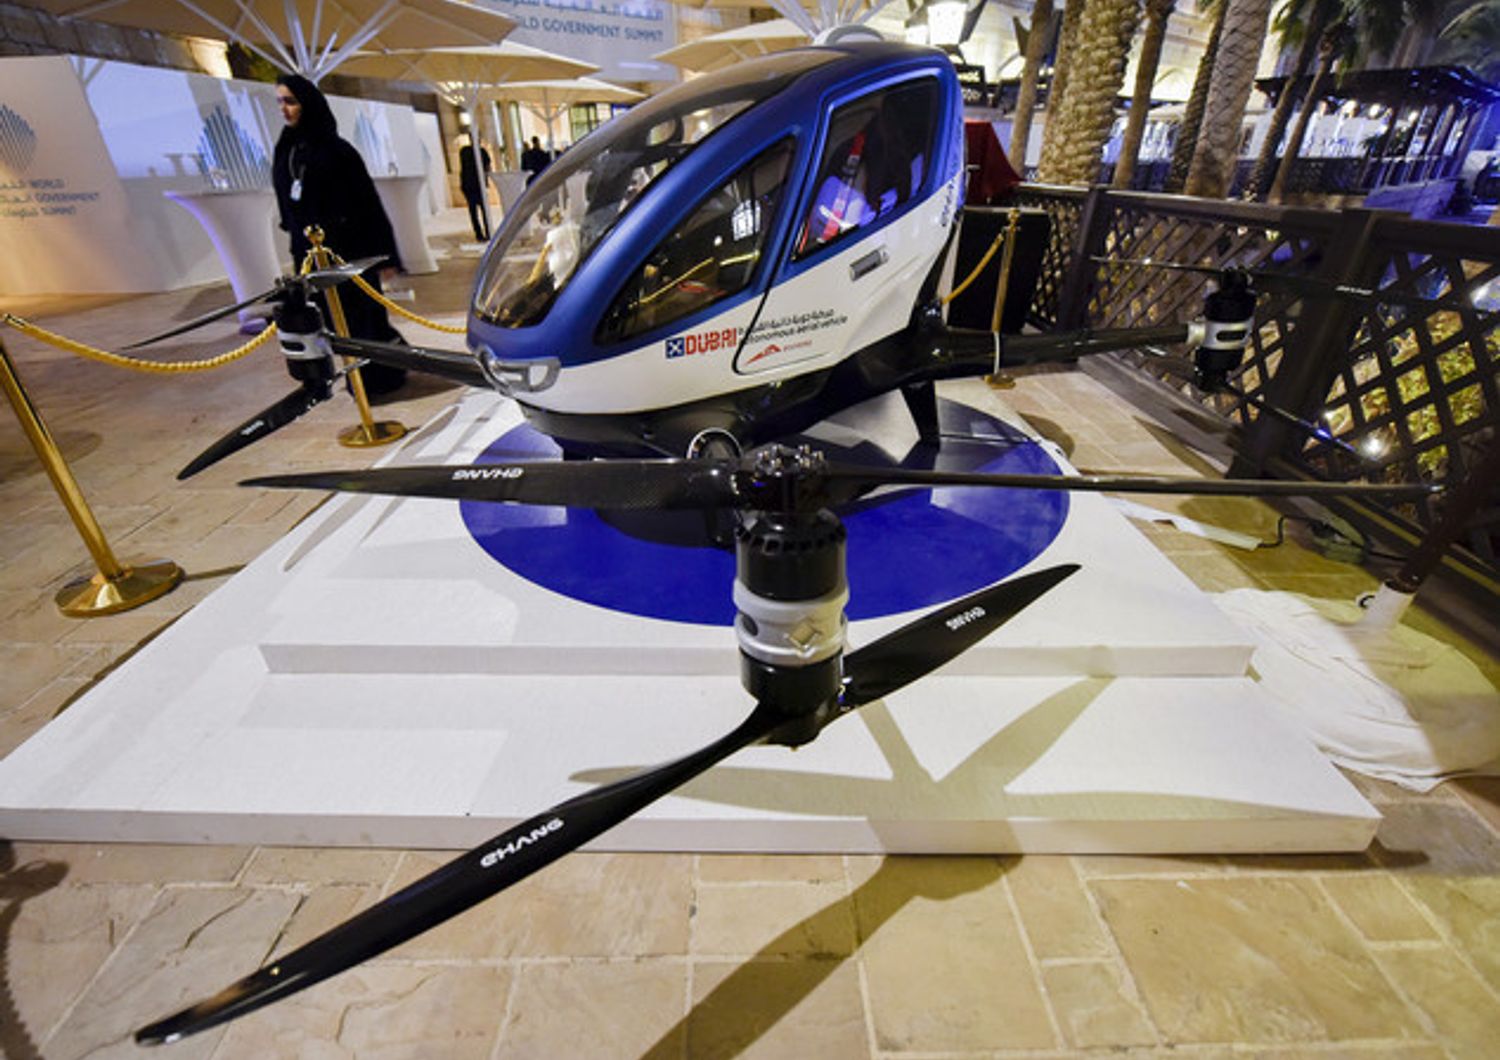 Chiedi un passaggio a un drone: da luglio il taxi volante a Dubai